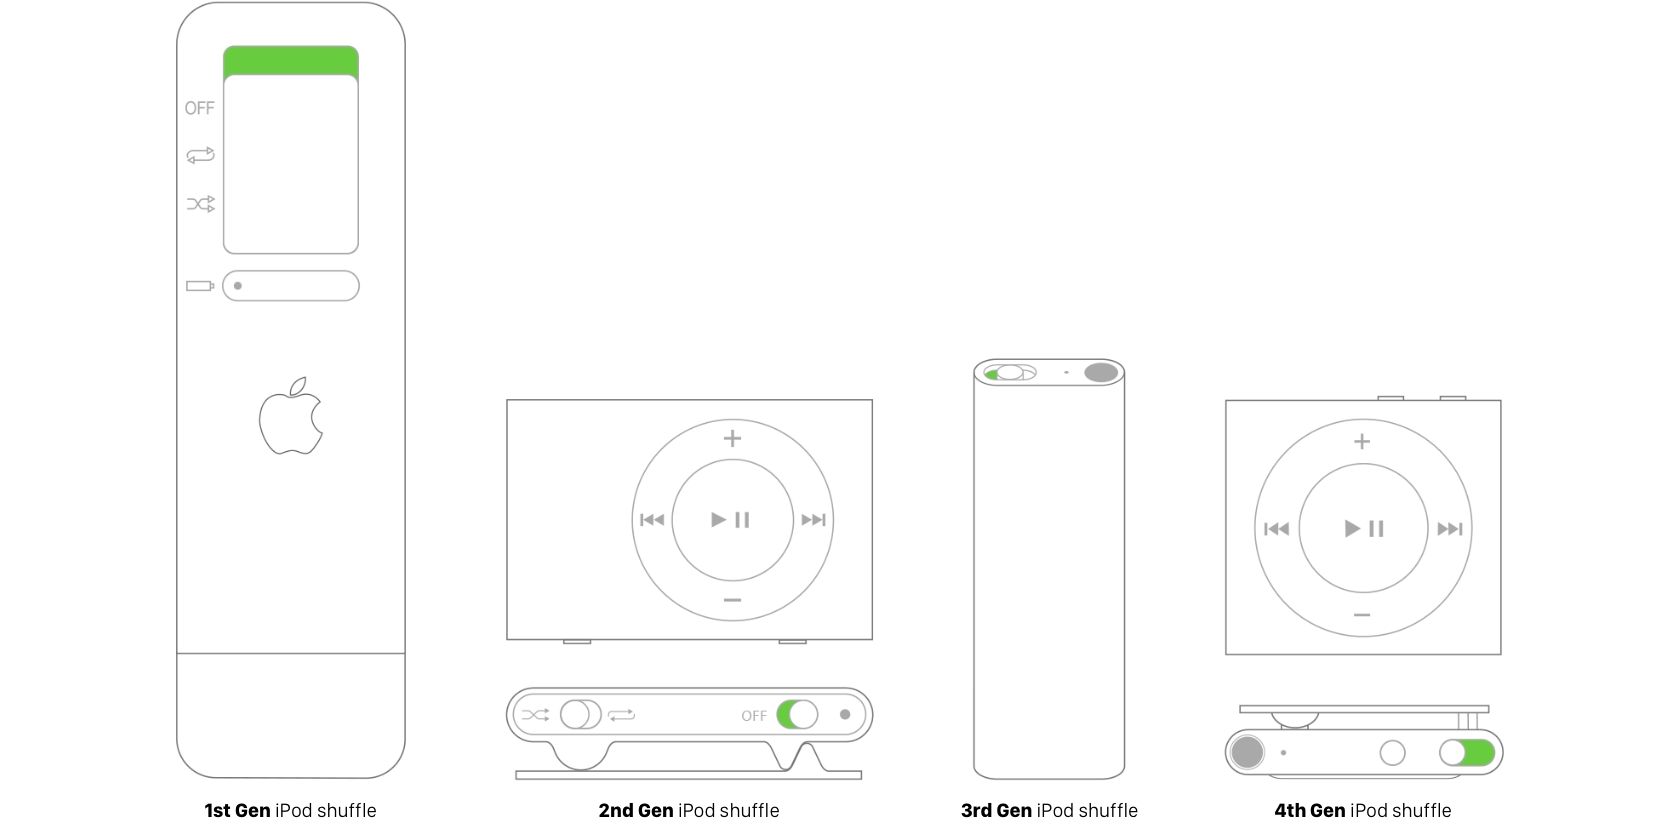 Localização dos botões liga/desliga em todas as gerações do iPod shuffle